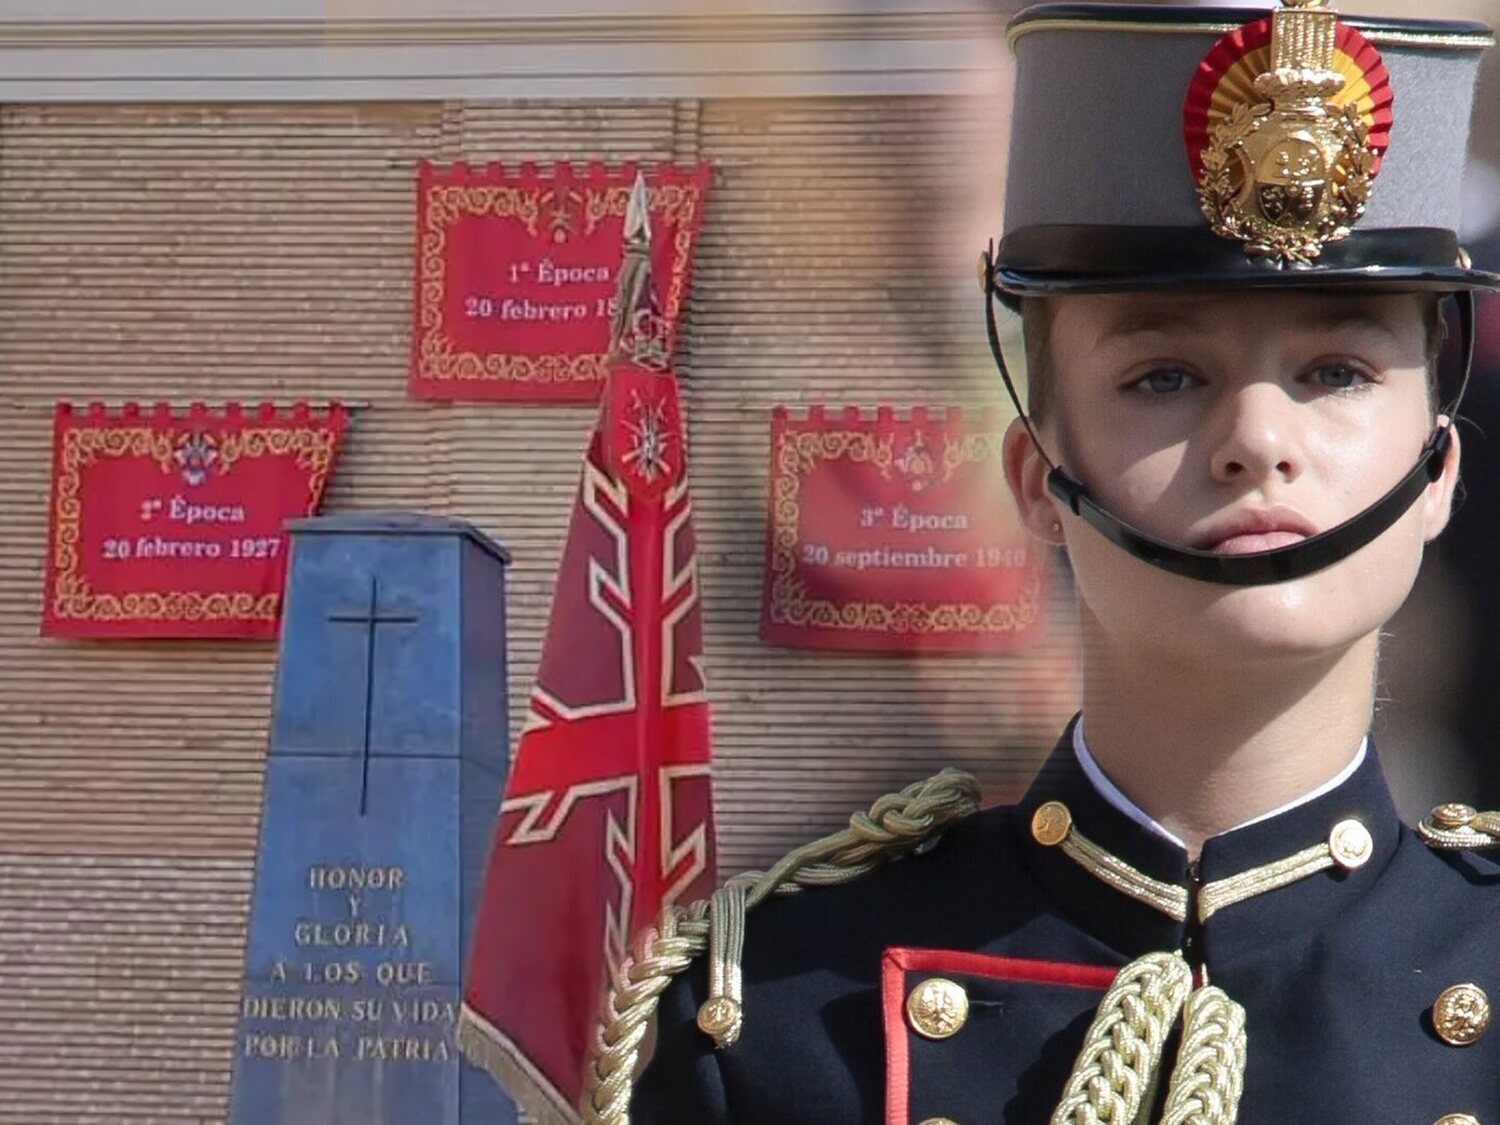 La Academia Militar de Zaragoza suprime a Franco de un tapiz exhibido en la jura de bandera de la princesa Leonor